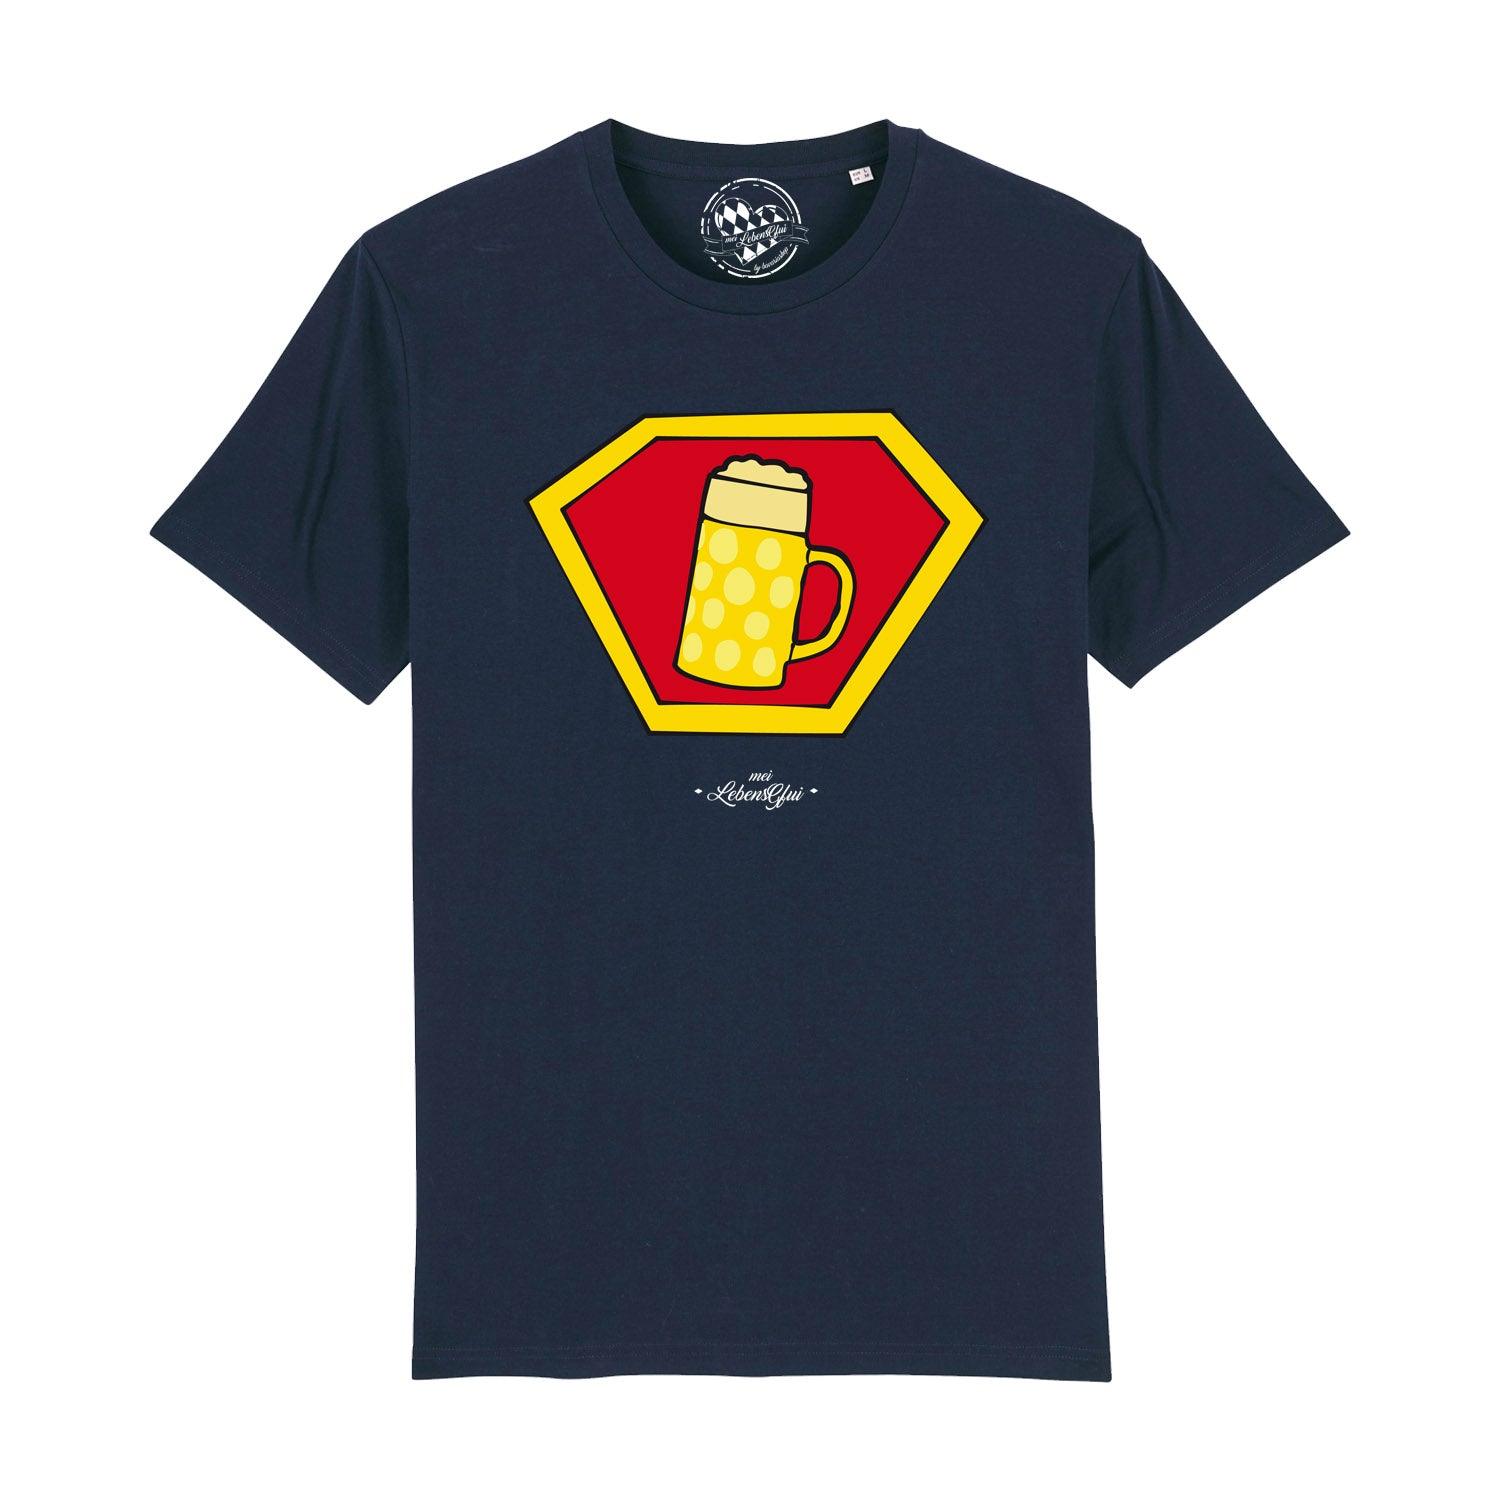 Herren T-Shirt "Super-Bierkrug" - bavariashop - mei LebensGfui